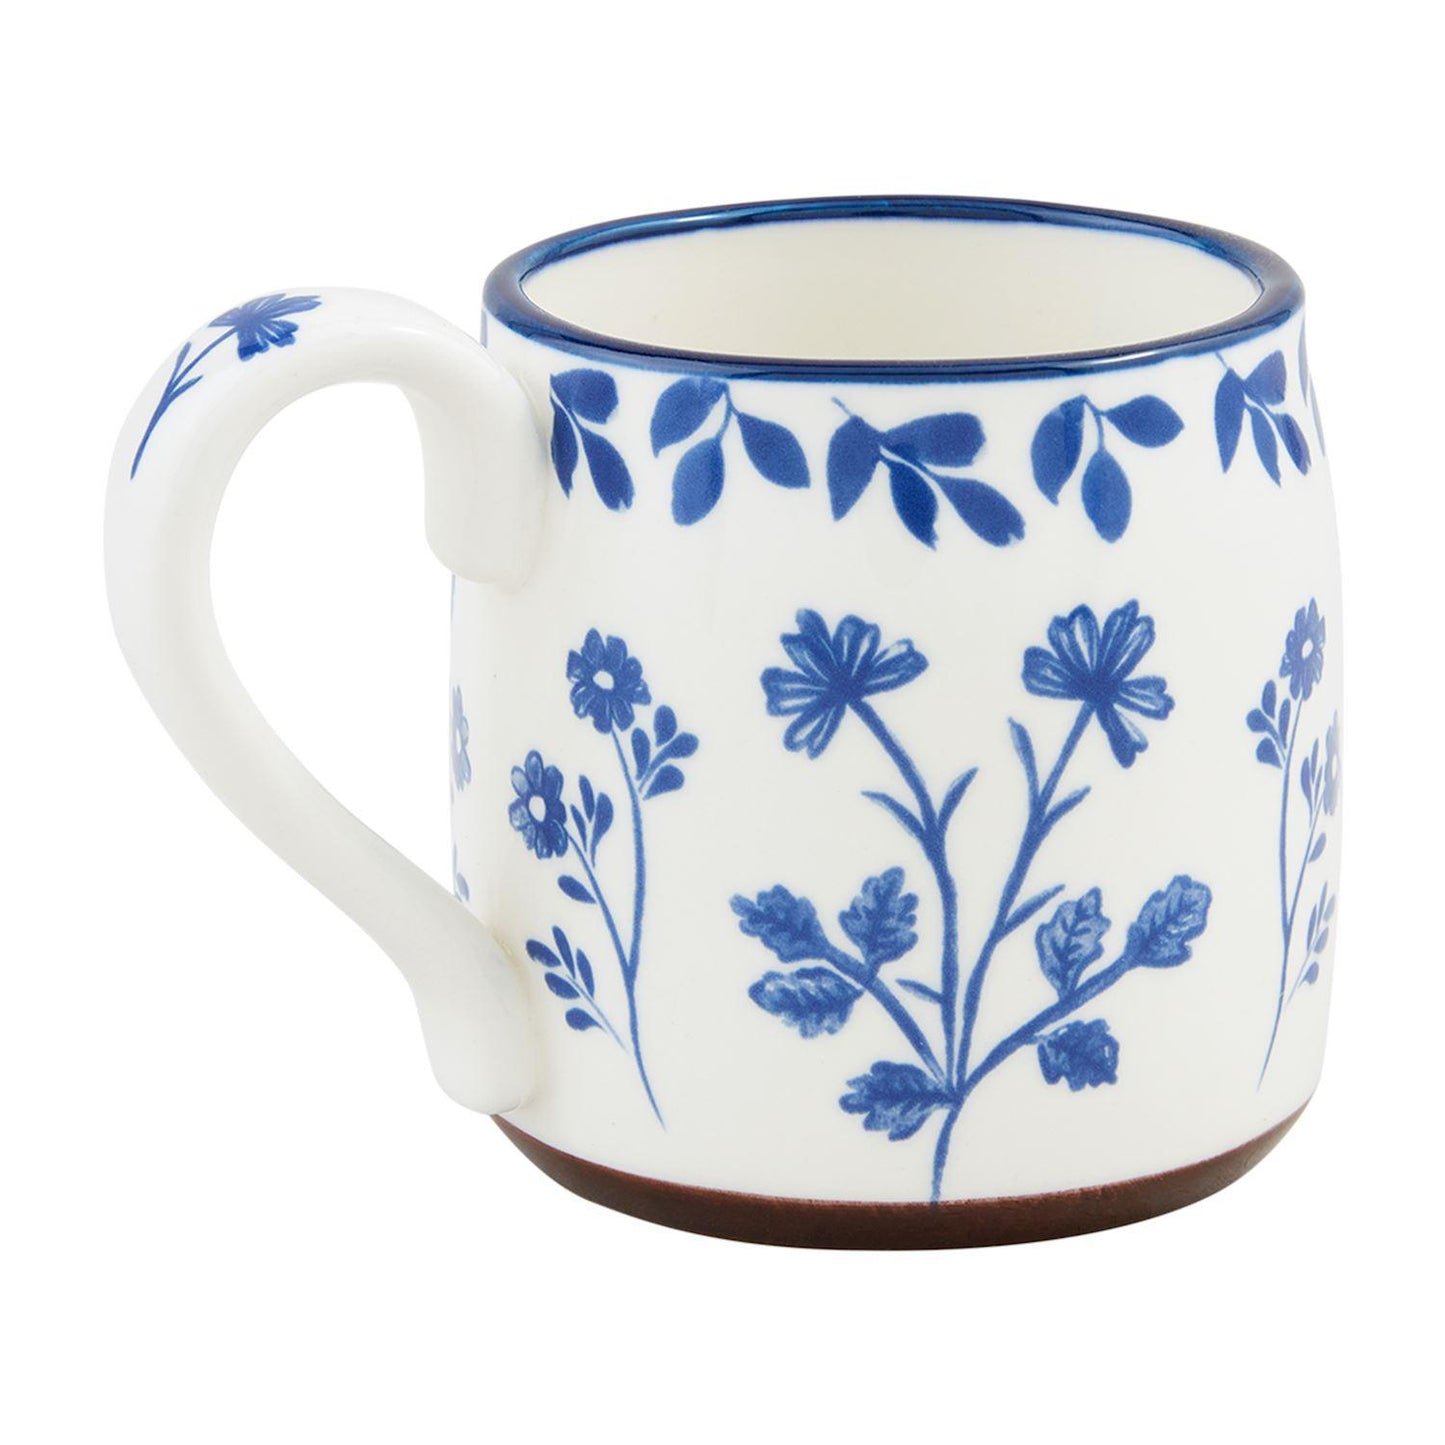 All Over Blue Floral Mug